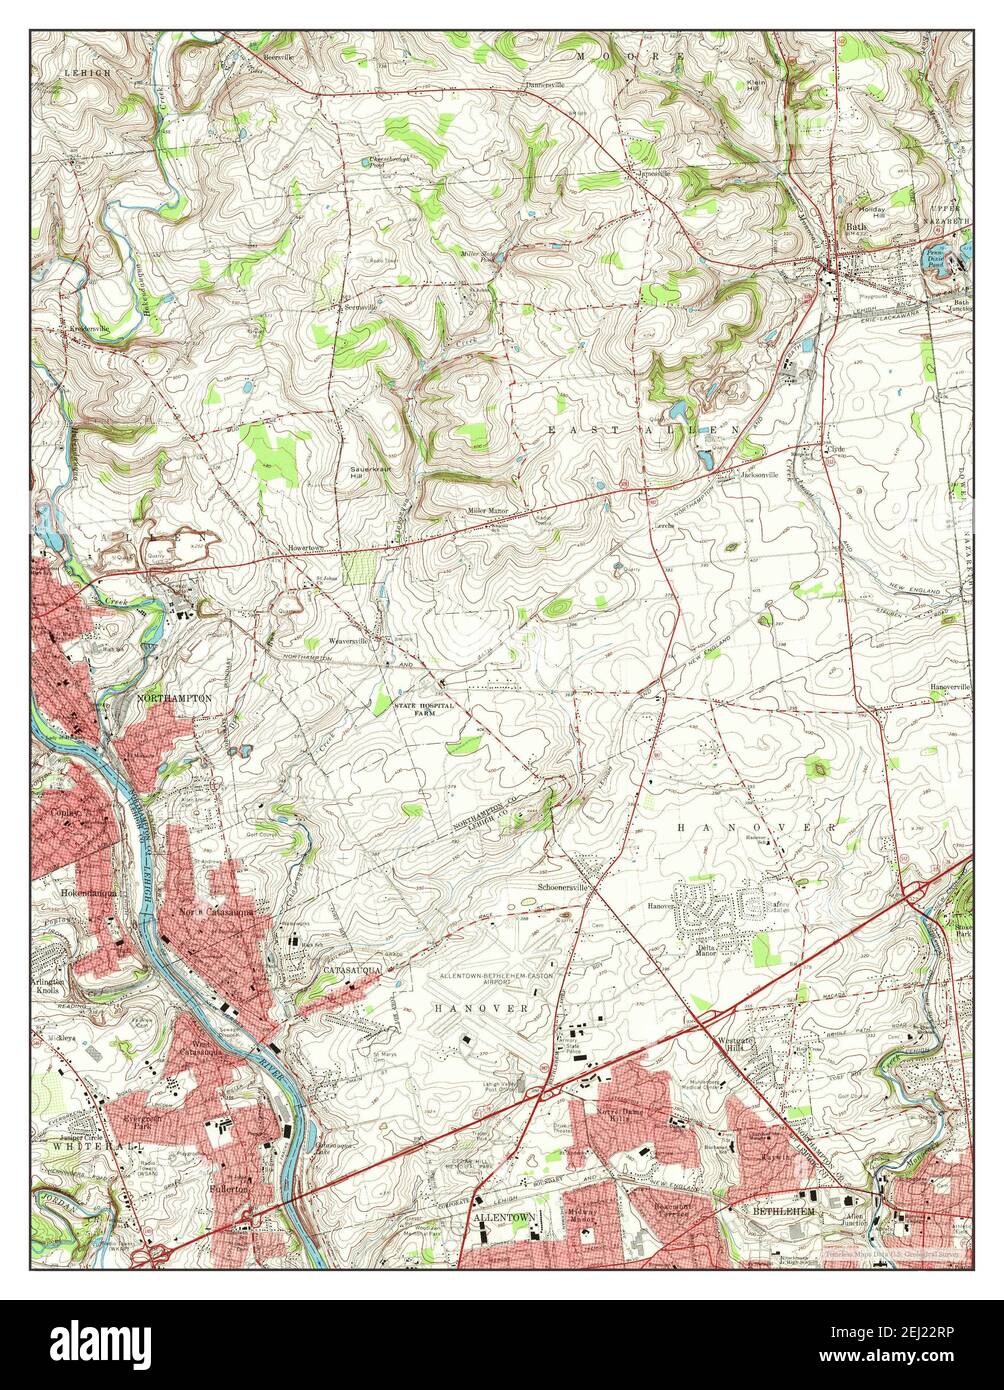 Catasauqua, Pennsylvania, Karte 1964, 1:24000, Vereinigte Staaten von Amerika von Timeless Maps, Daten U.S. Geological Survey Stockfoto